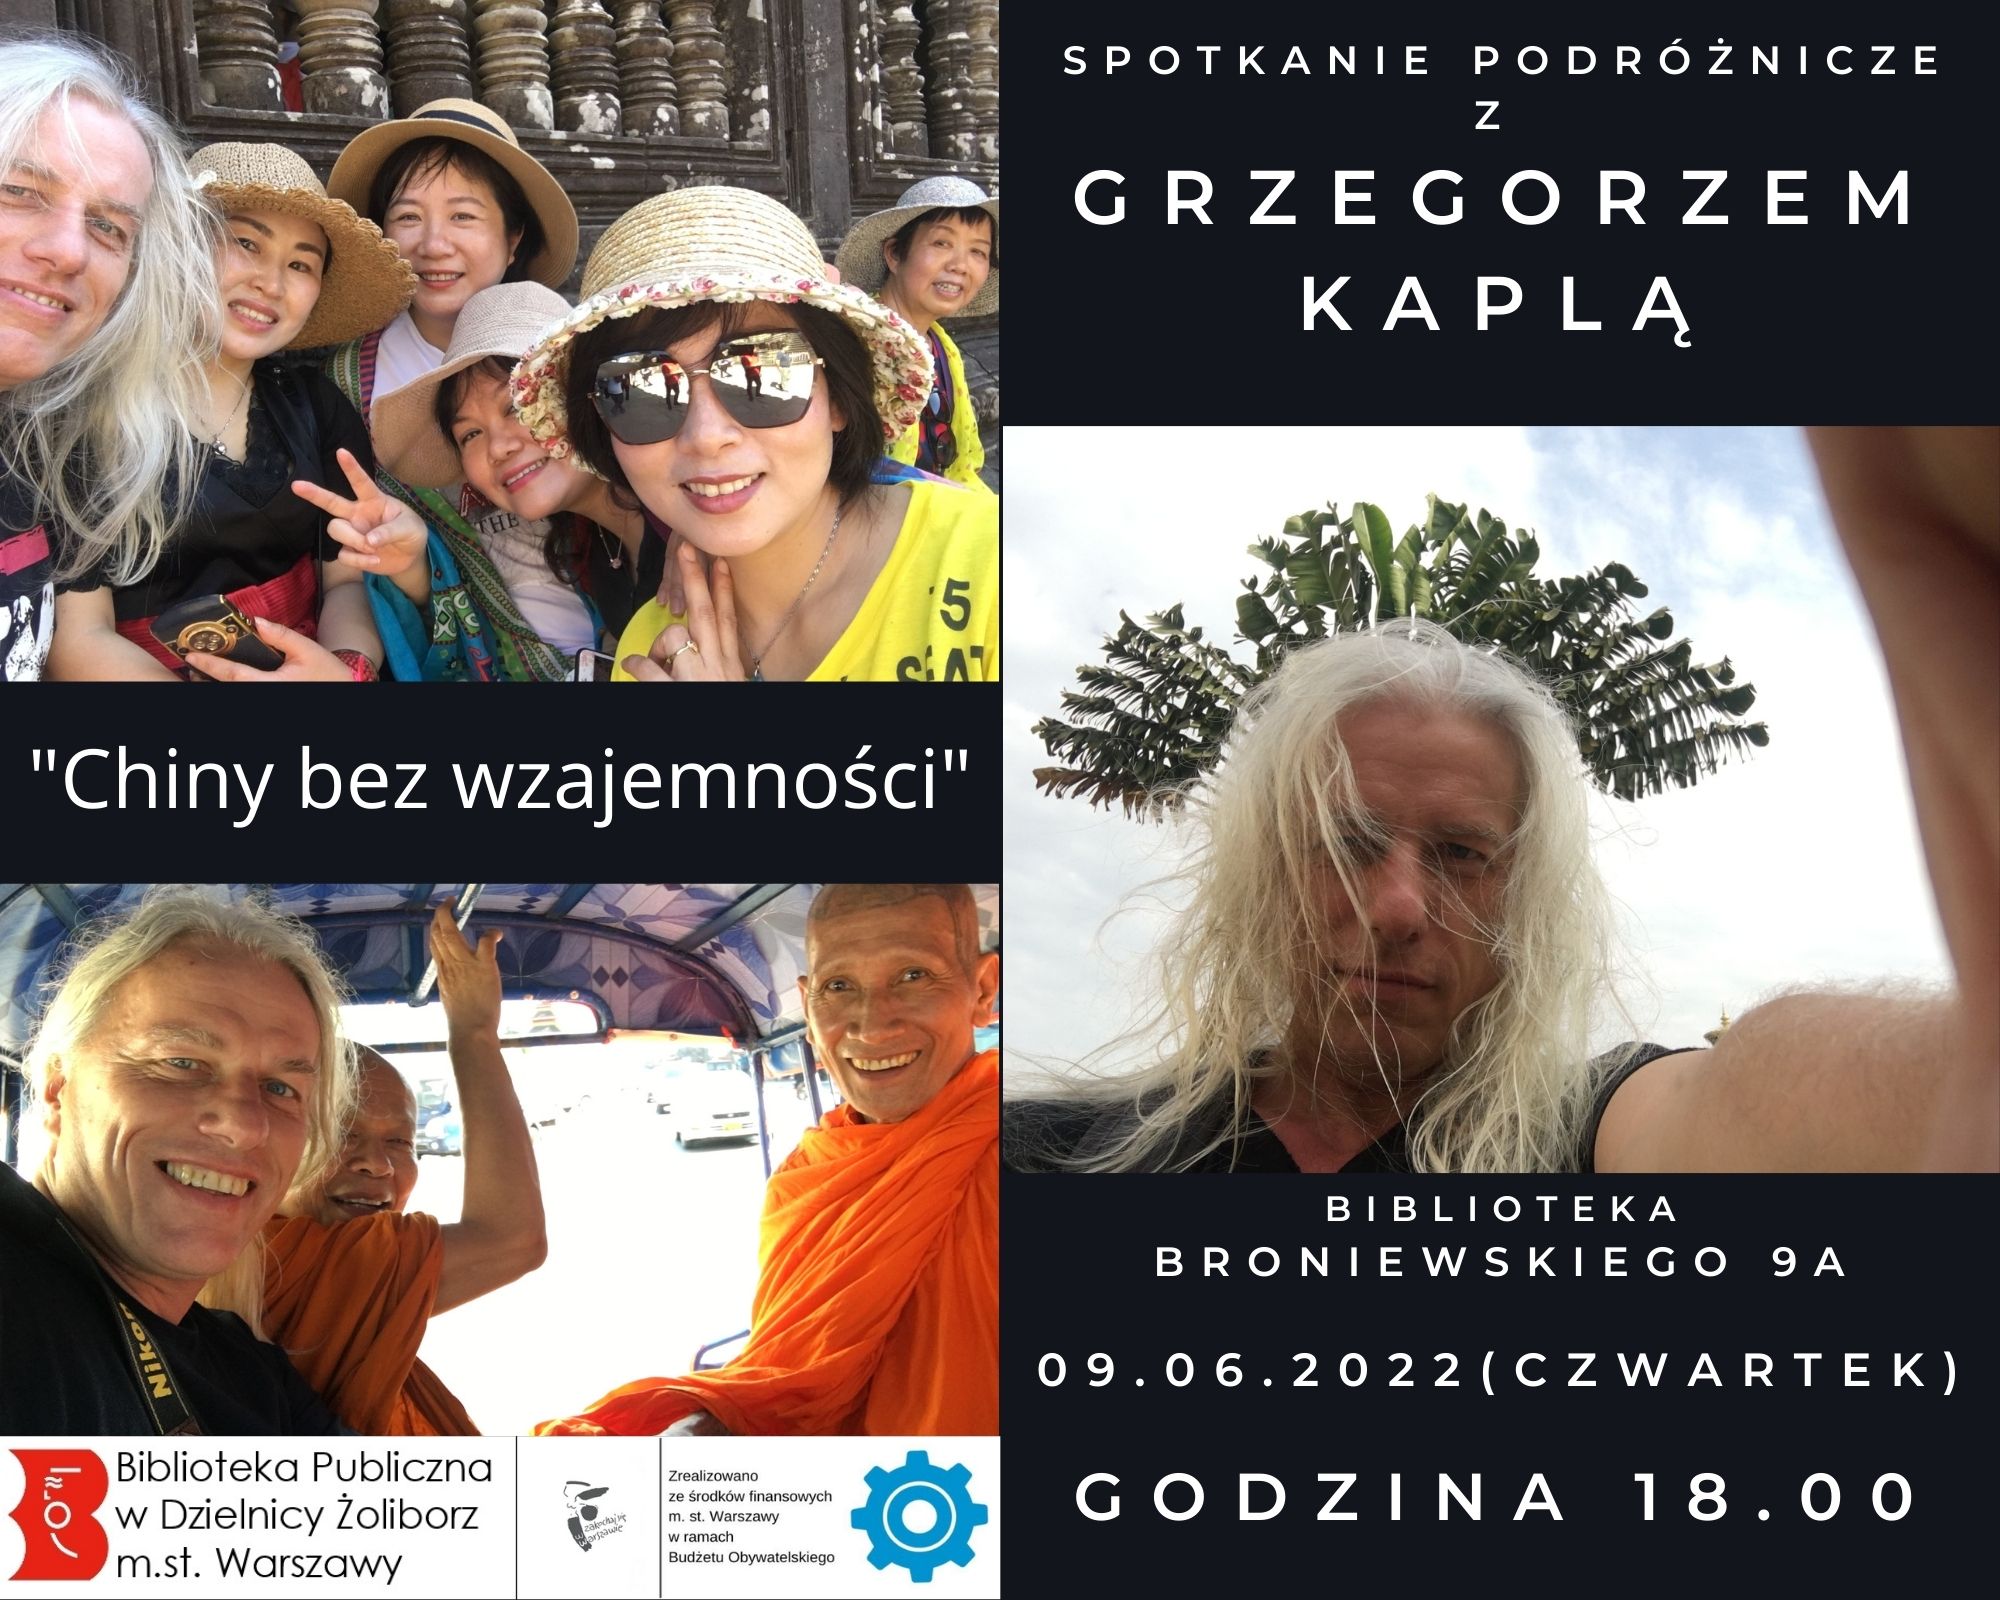 plakat informujący o spotkaniu podróżniczym z Grzegorzem Kaplą, 9 czerwca o godzinie 18 w Bibliotece przy ul. Broniewskiego 9a na temat książki "Chiny bez wzajemności"